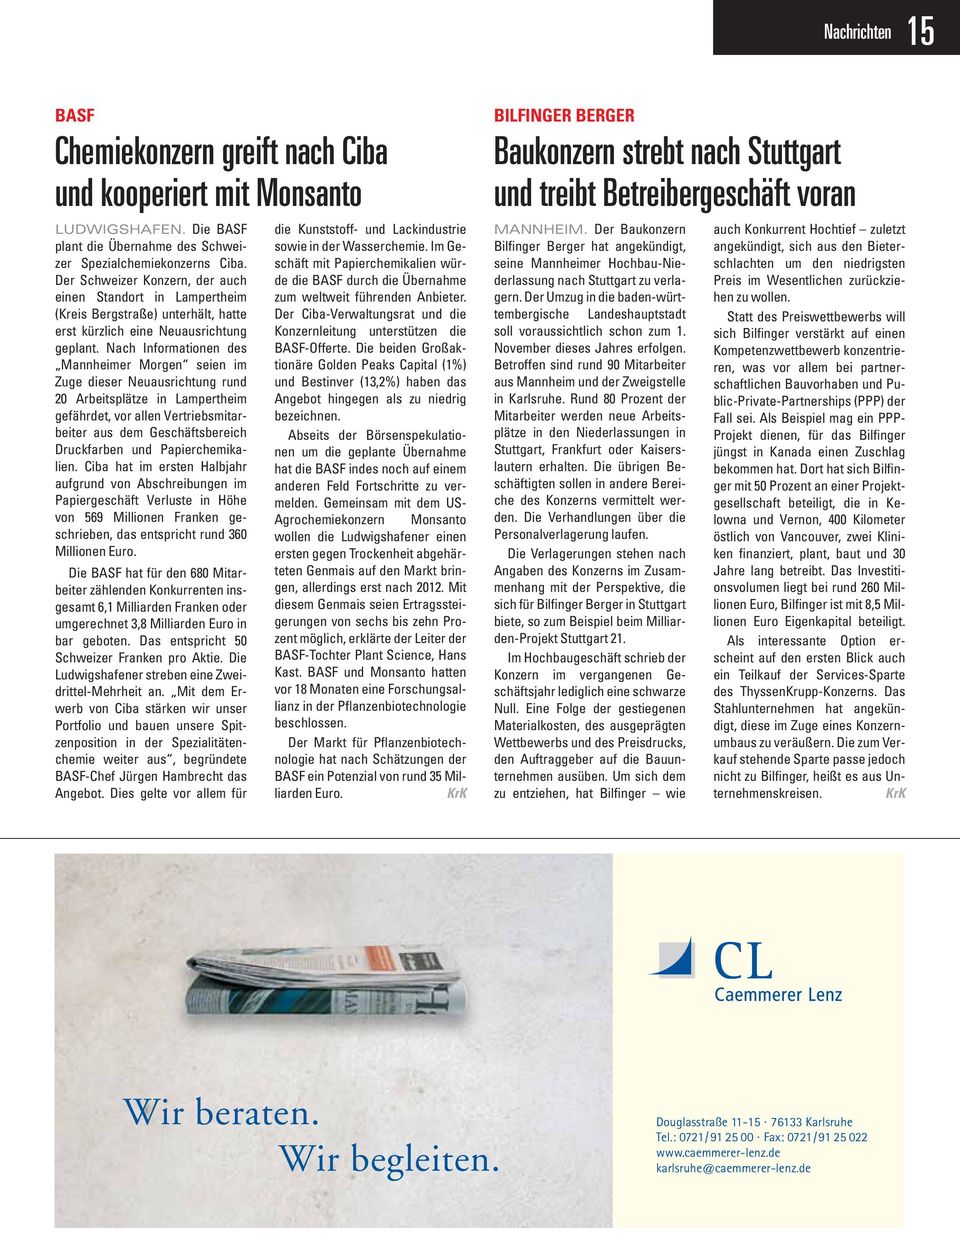 Nach Informationen des Mannheimer Morgen seien im Zuge dieser Neuausrichtung rund 20 Arbeitsplätze in Lampertheim gefährdet, vor allen Vertriebsmitarbeiter aus dem Geschäftsbereich Druckfarben und